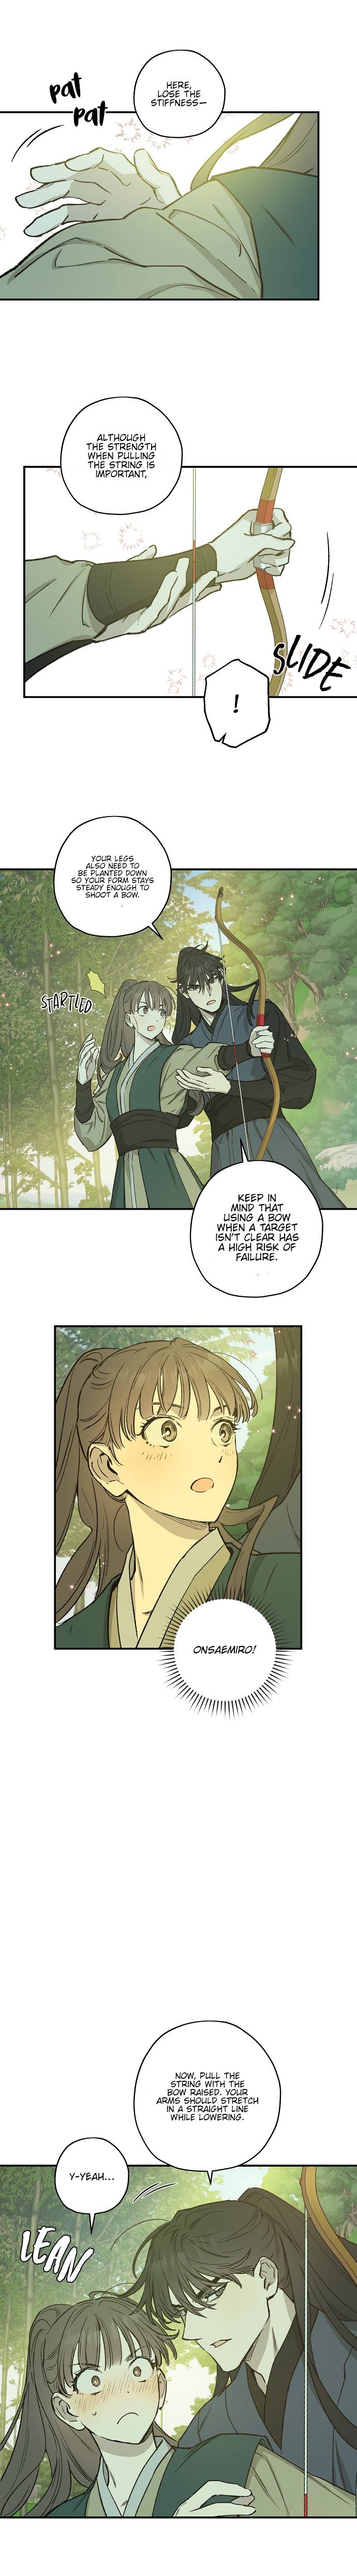 Onsaemiro - Chapter 23 Page 9